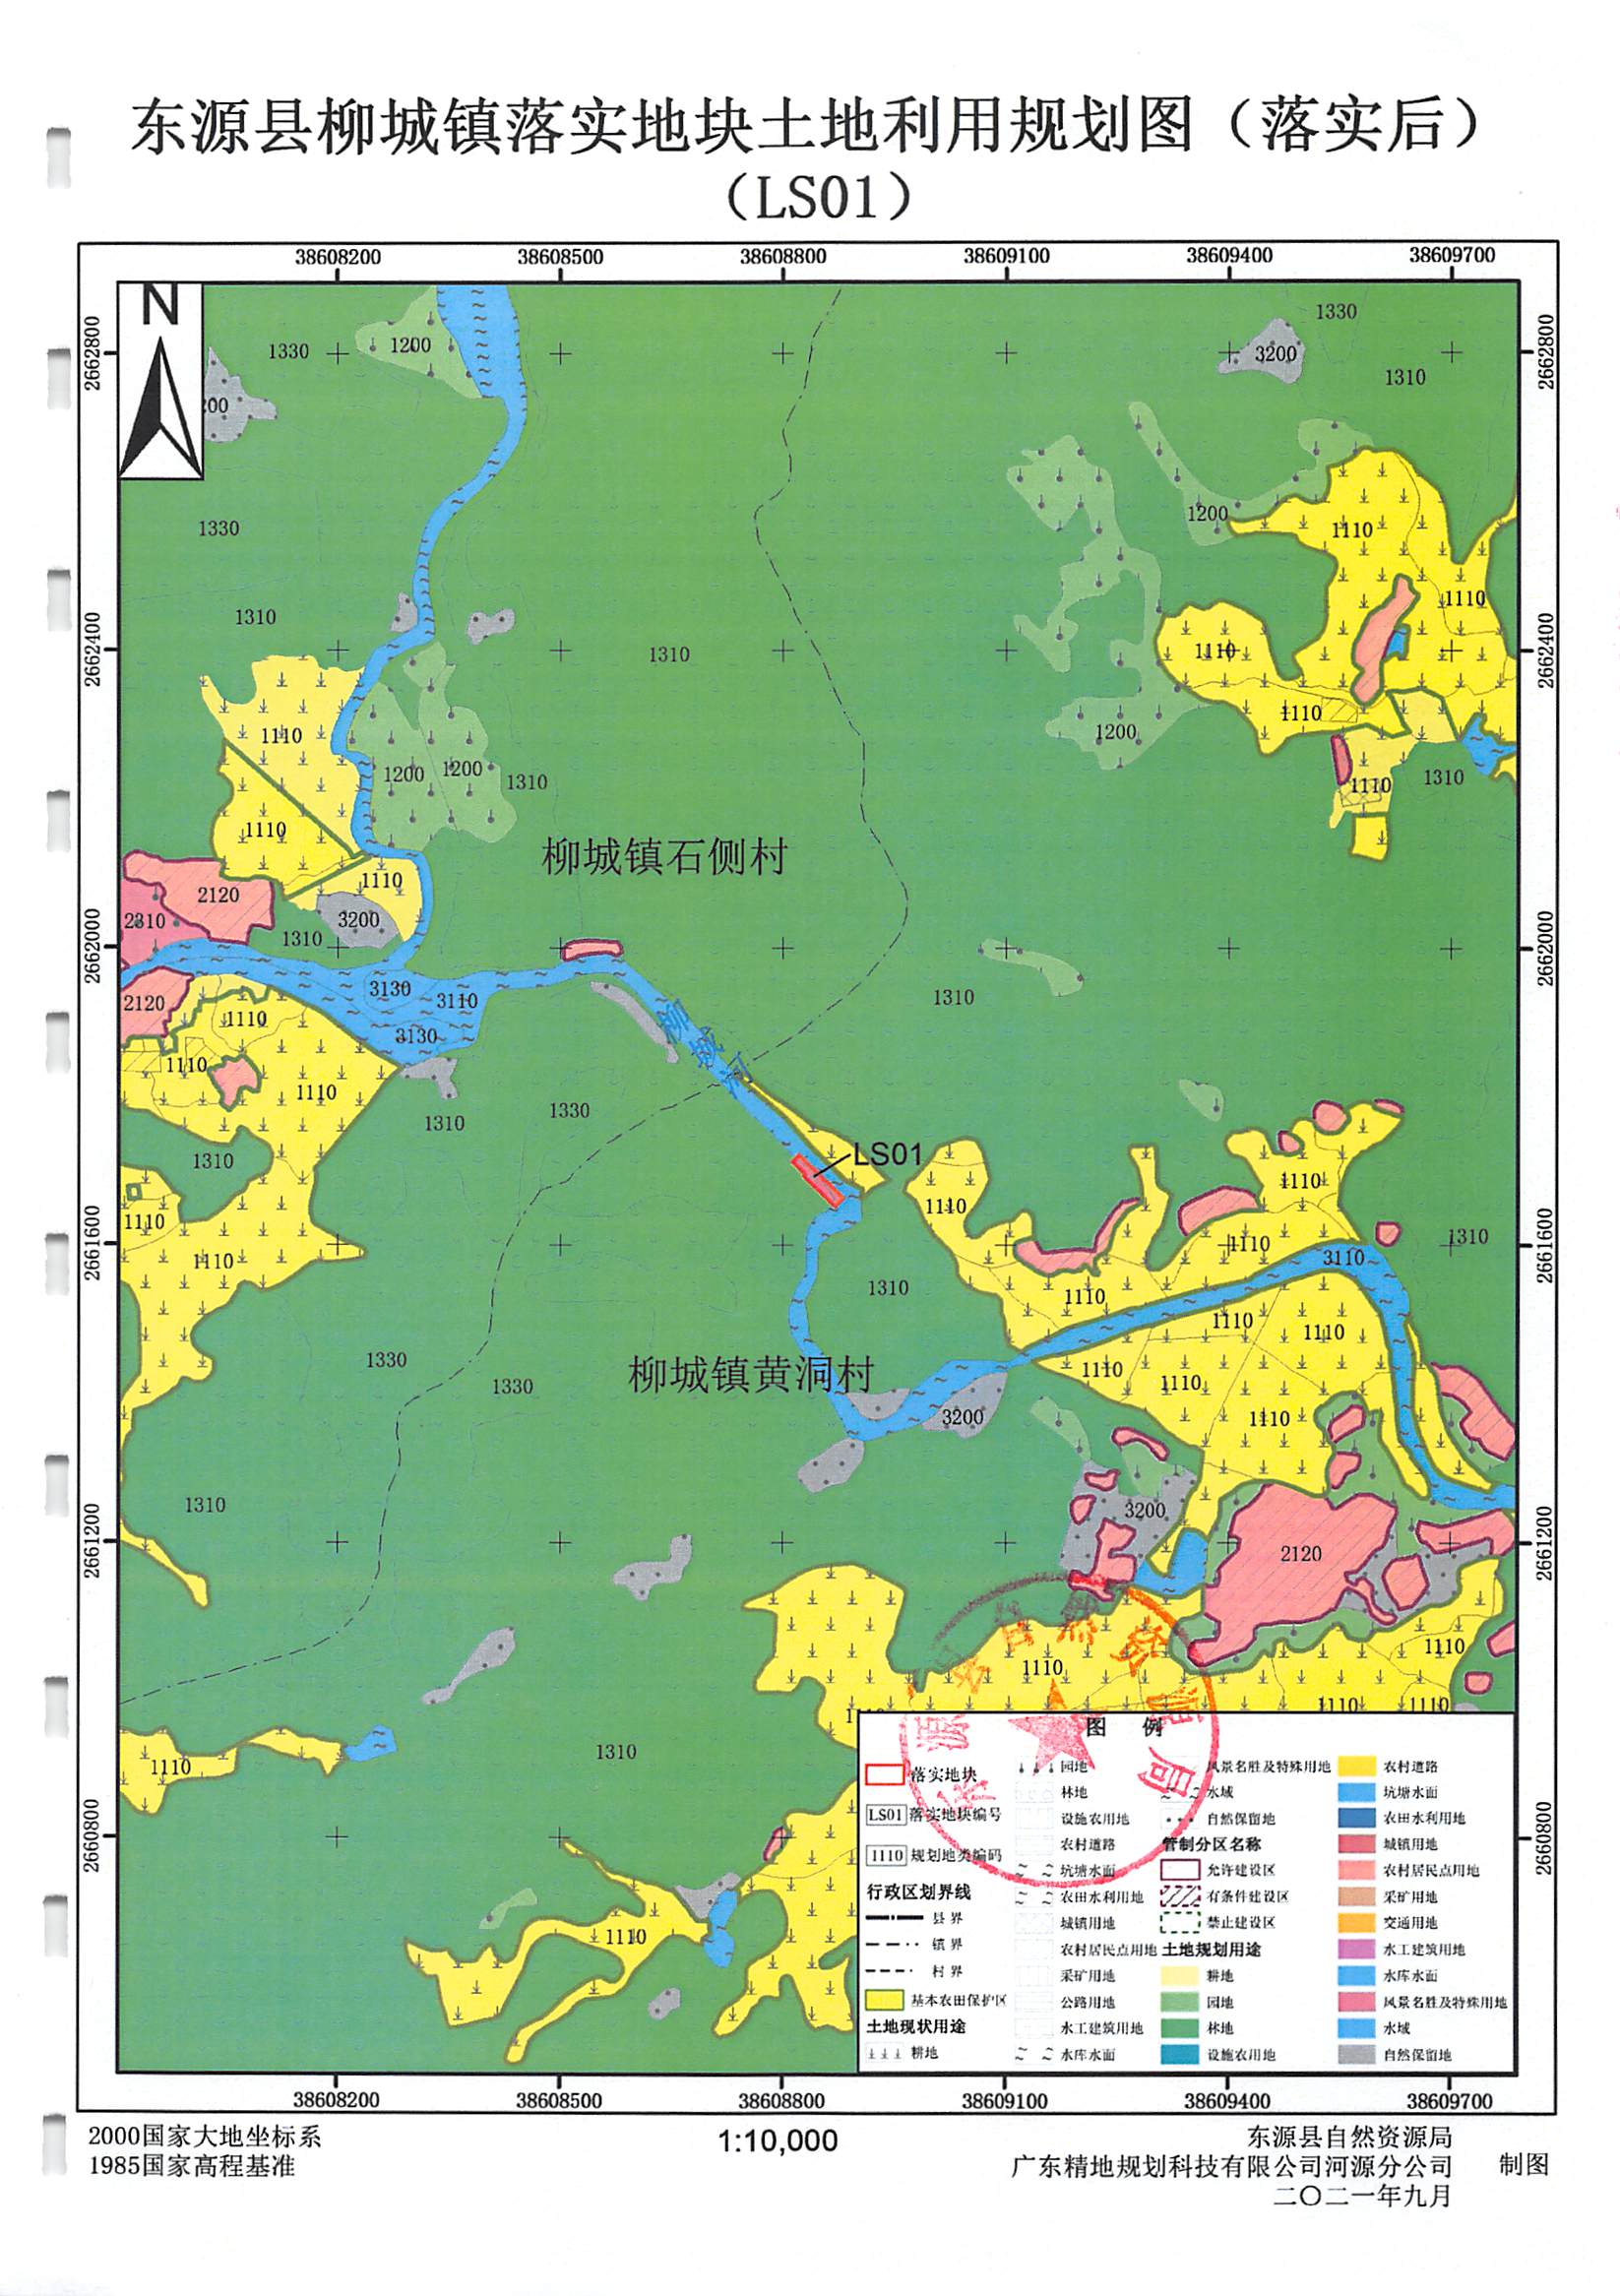 东源县地图显示各镇图片